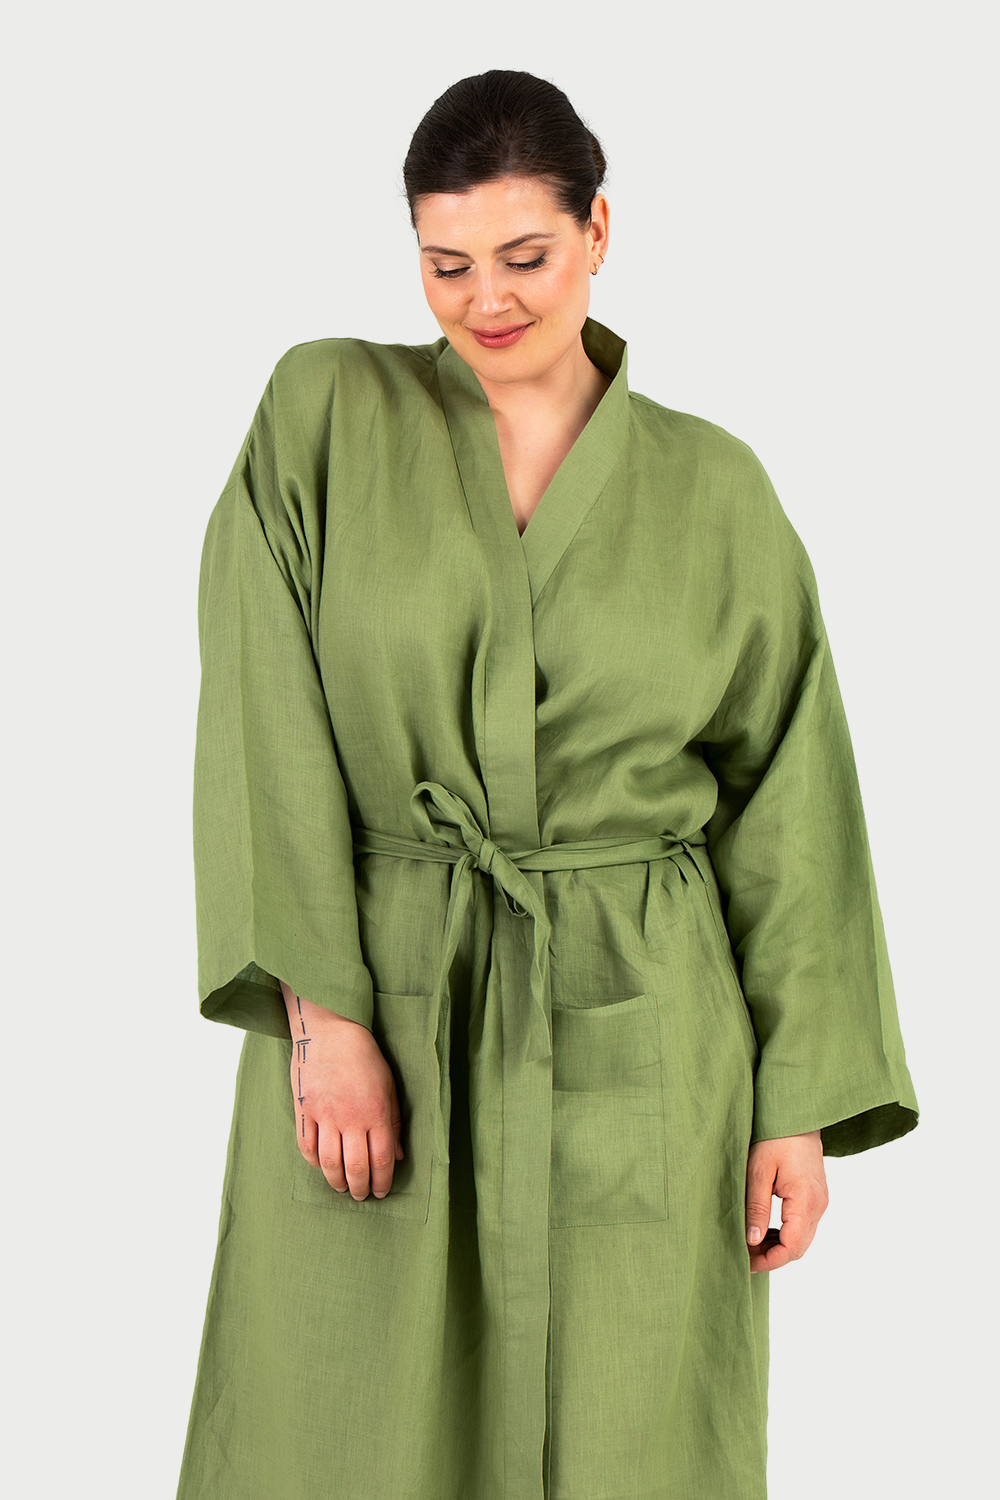 Grön morgon-/badrock i rent linne. Med både knytskärp och knappar. Finns i stora storlekar. Storlek 42-56.